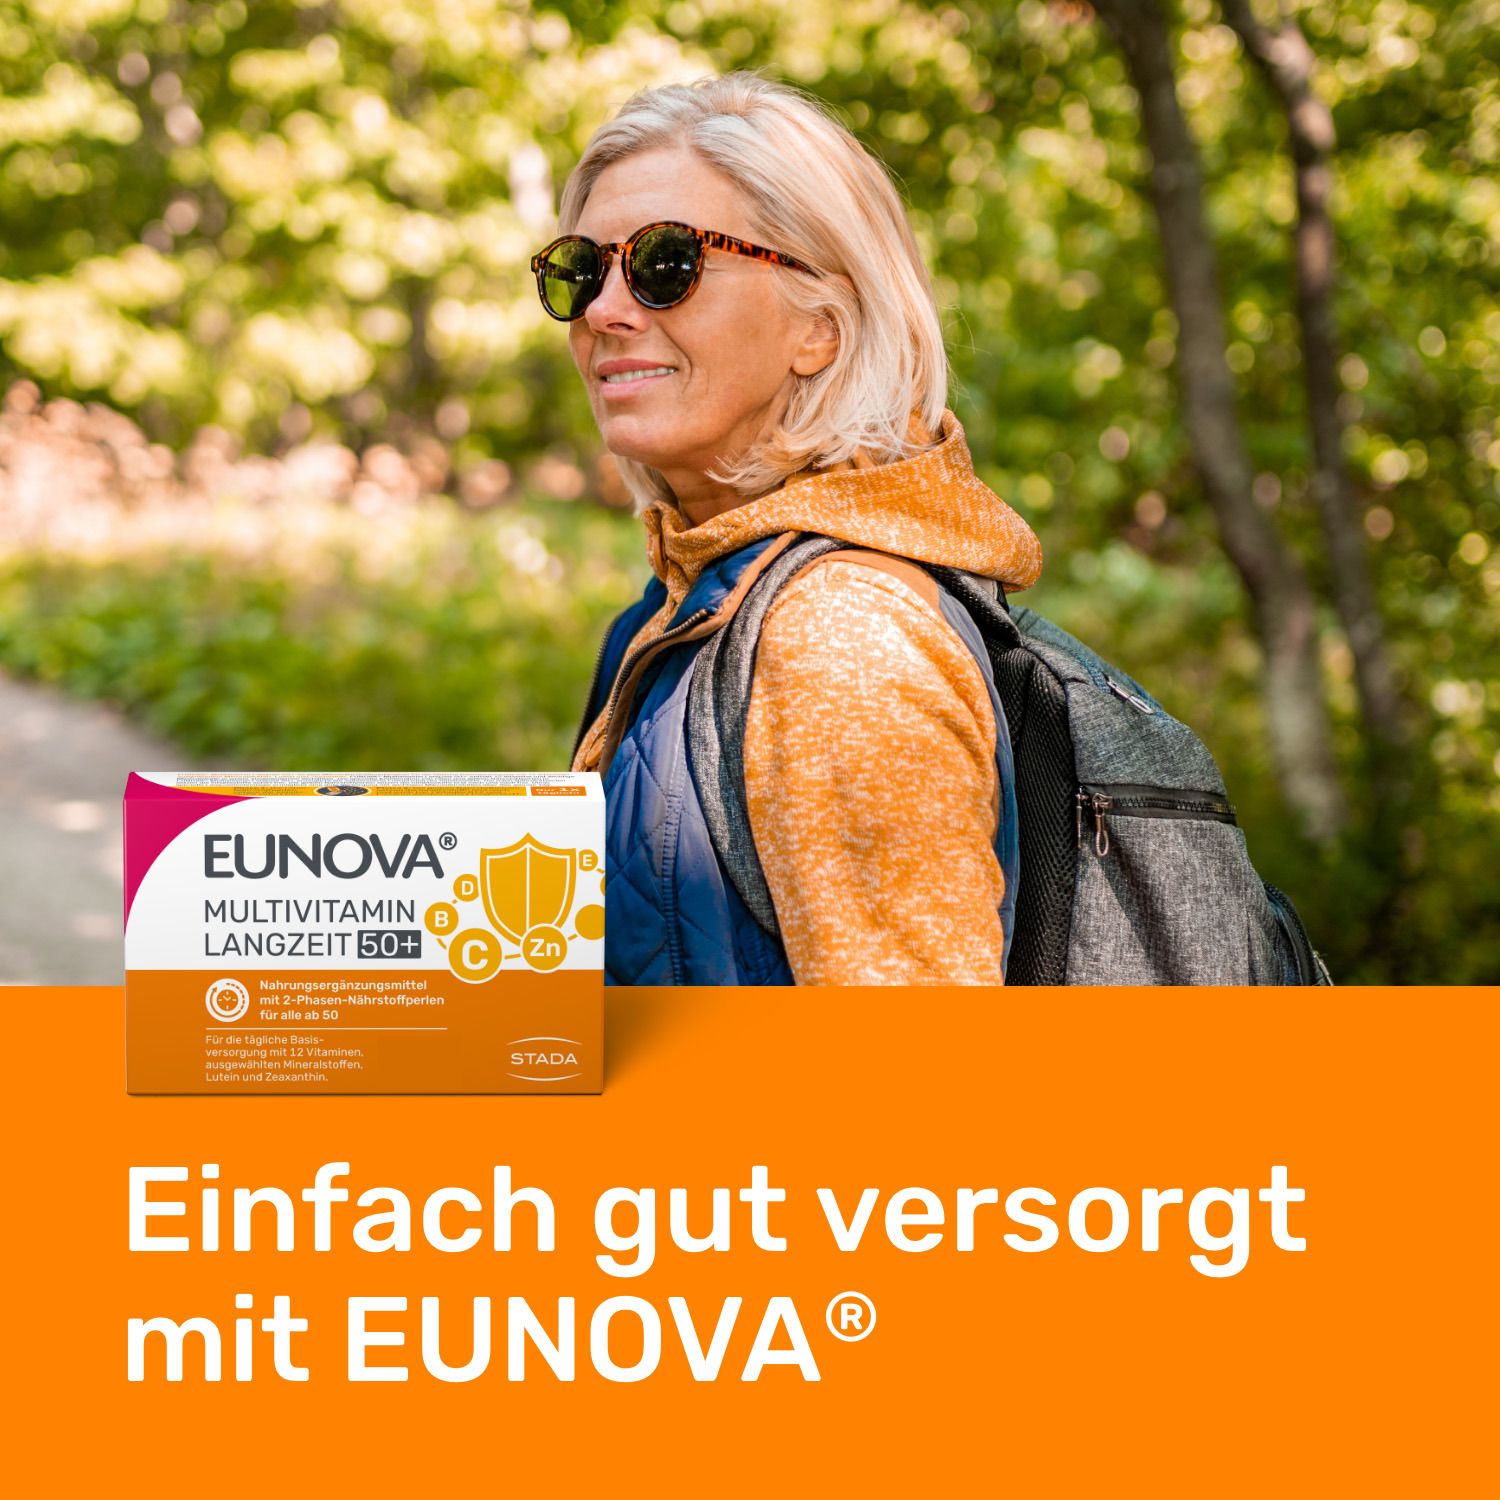 EUNOVA® Langzeit 50+ - Multivitaminpräparat für Menschen ab 50 Jahren